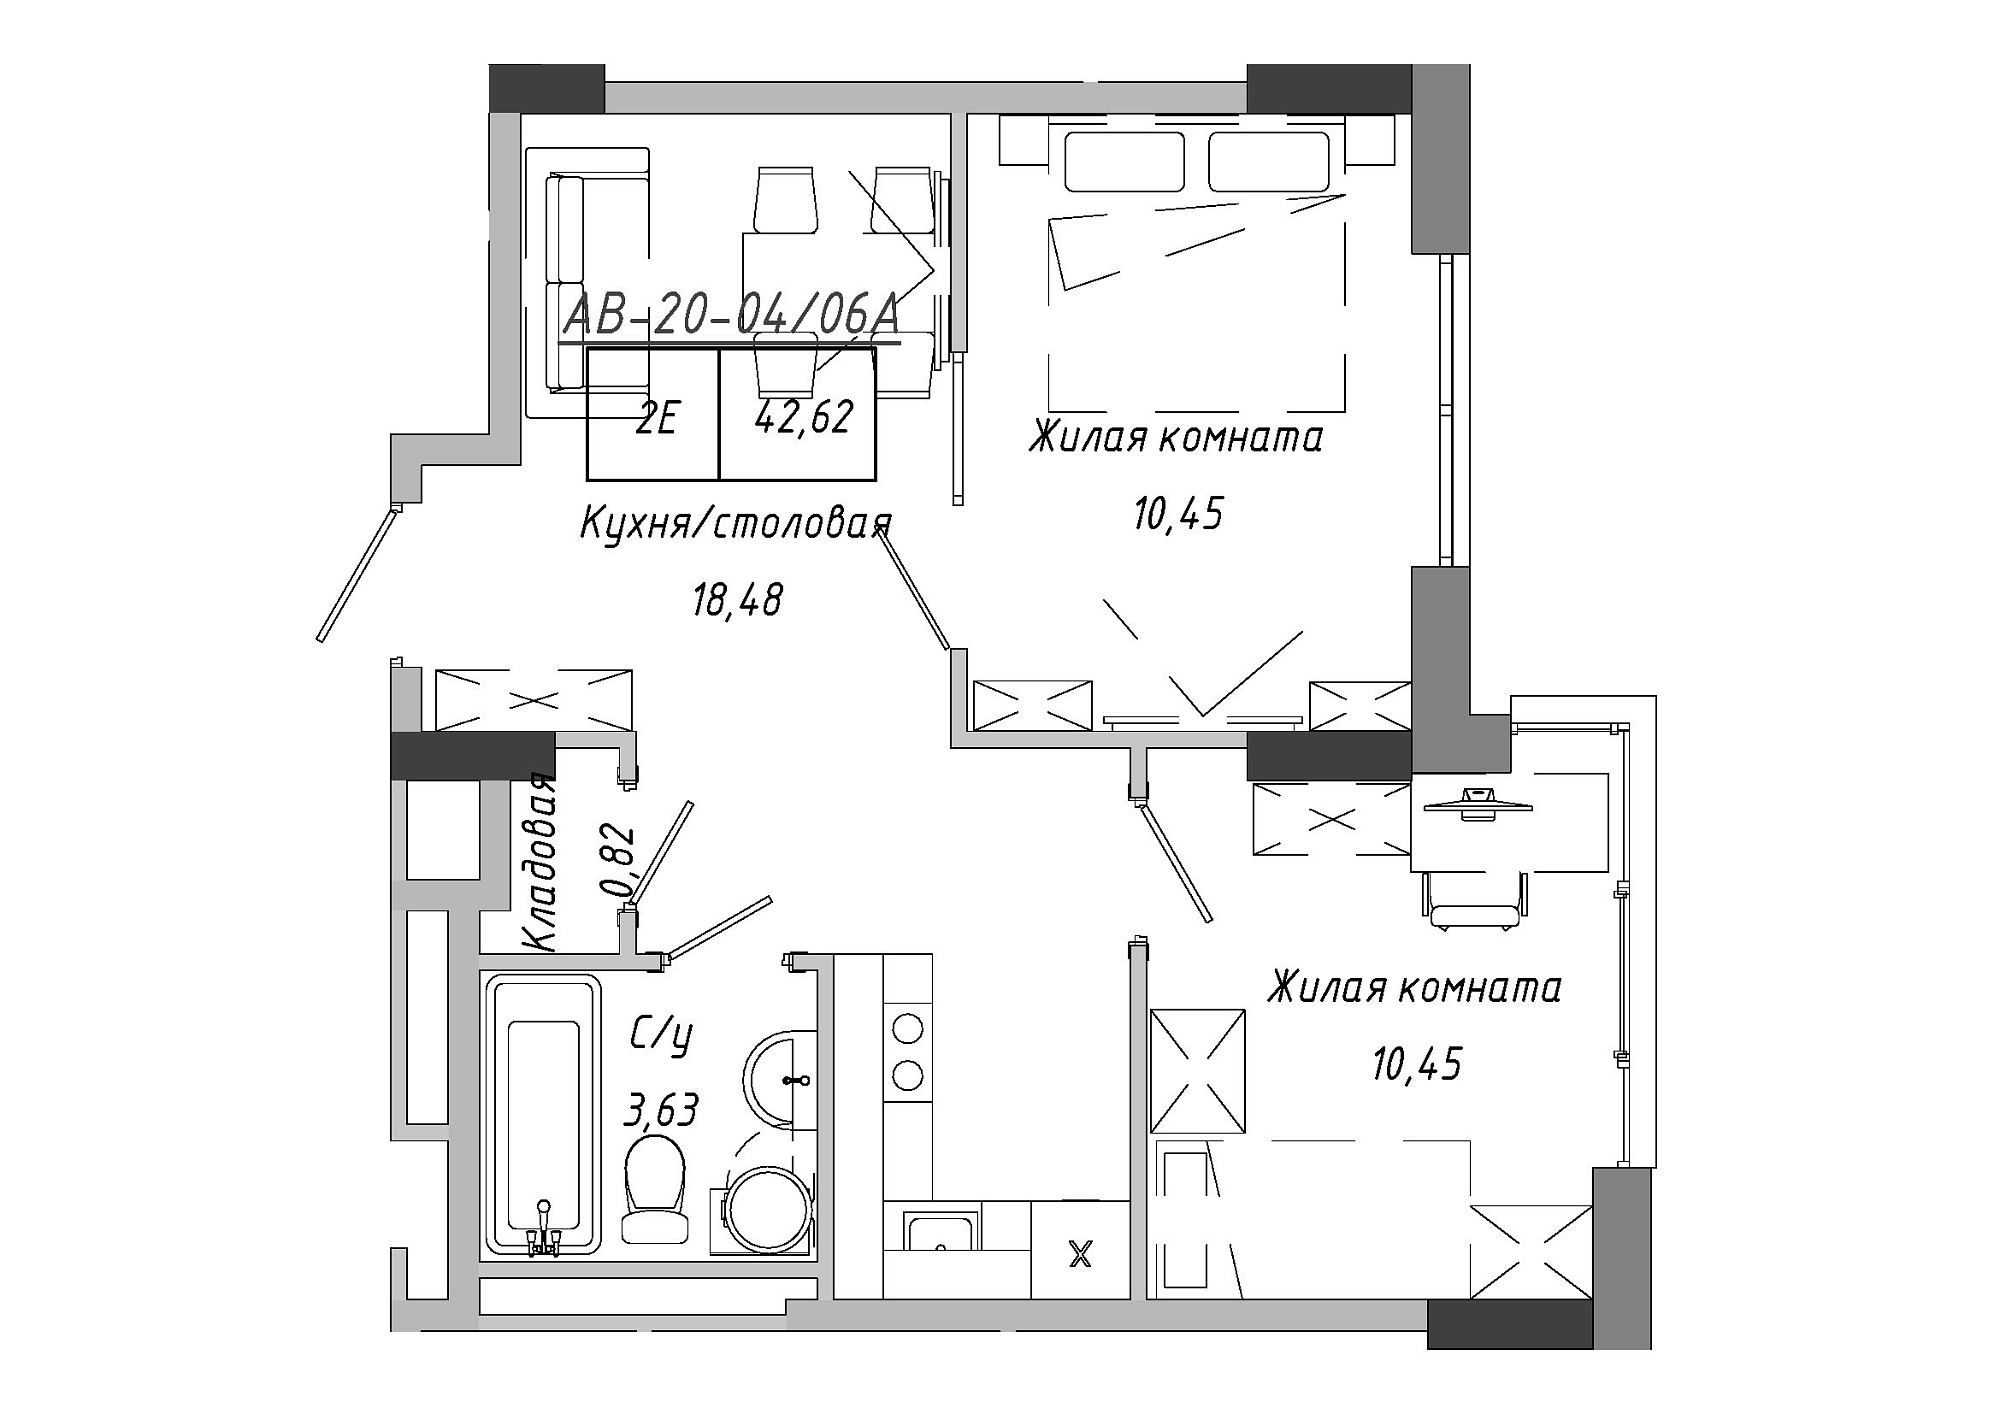 Планування 2-к квартира площею 42.62м2, AB-20-04/0006а.